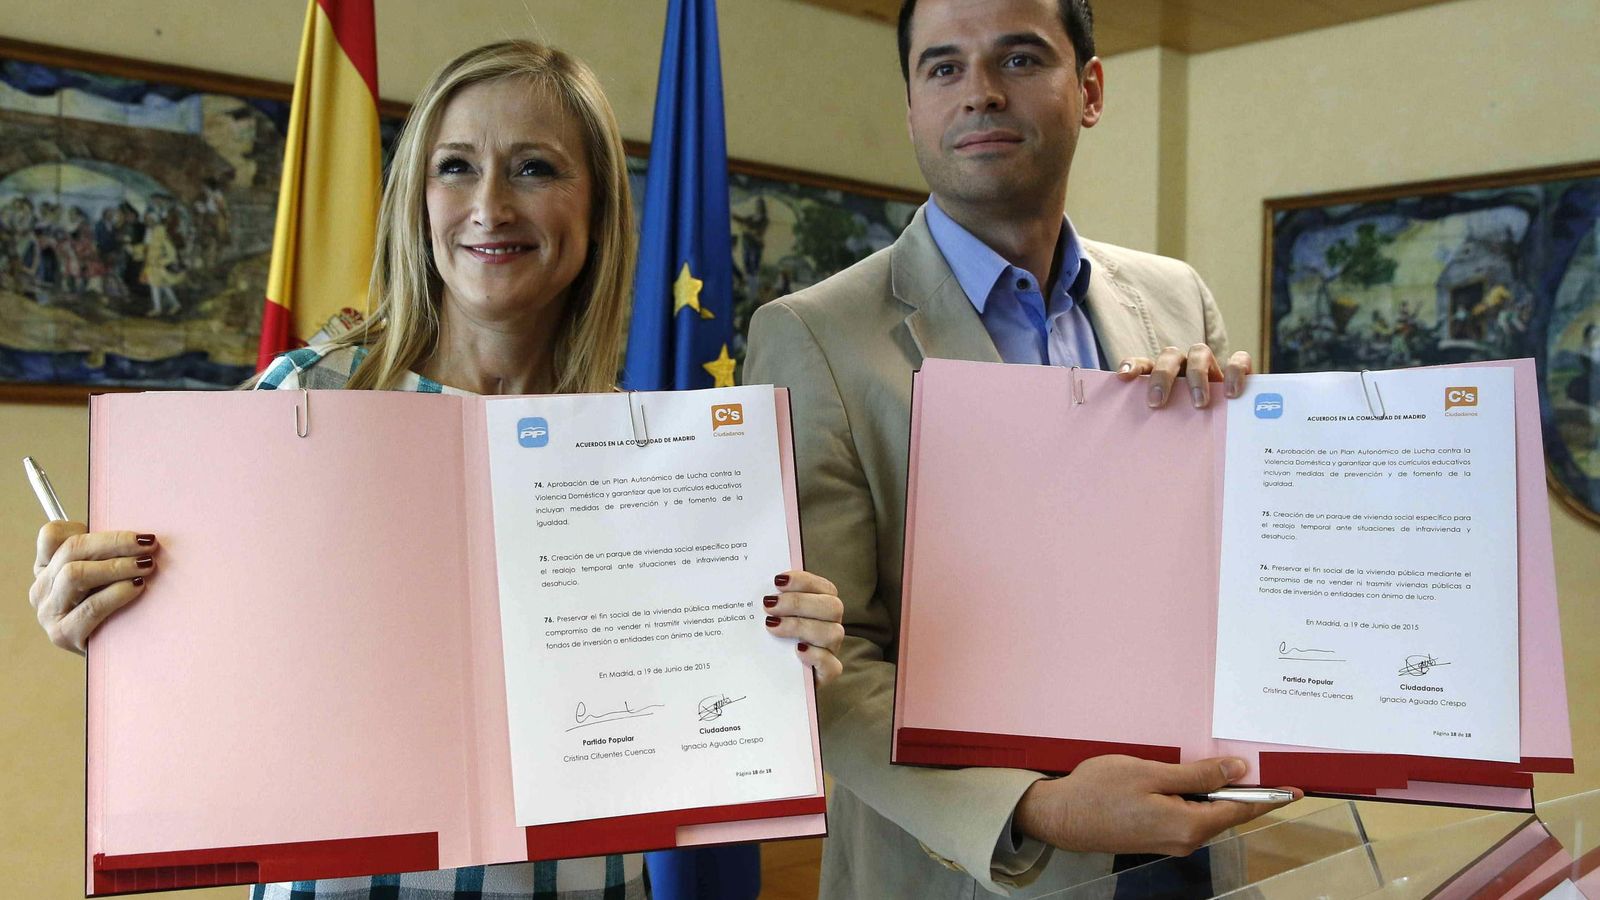 Foto: Cristina Cifuentes e Ignacio Aguado muestran el documento de acuerdo firmado entre sus partidos el pasado 19 de junio (EFE)